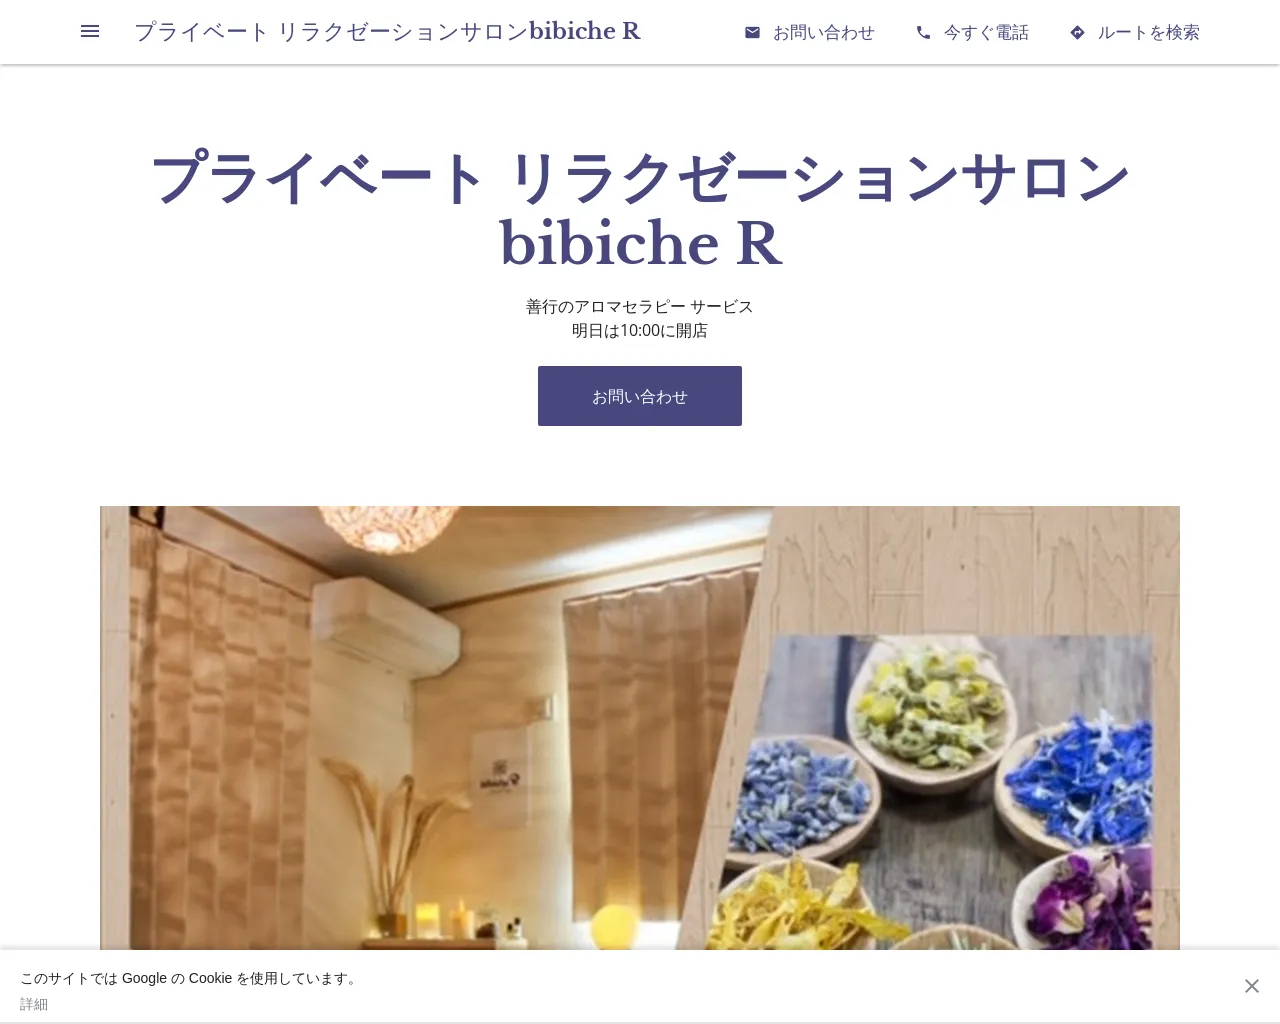 bibiche R site